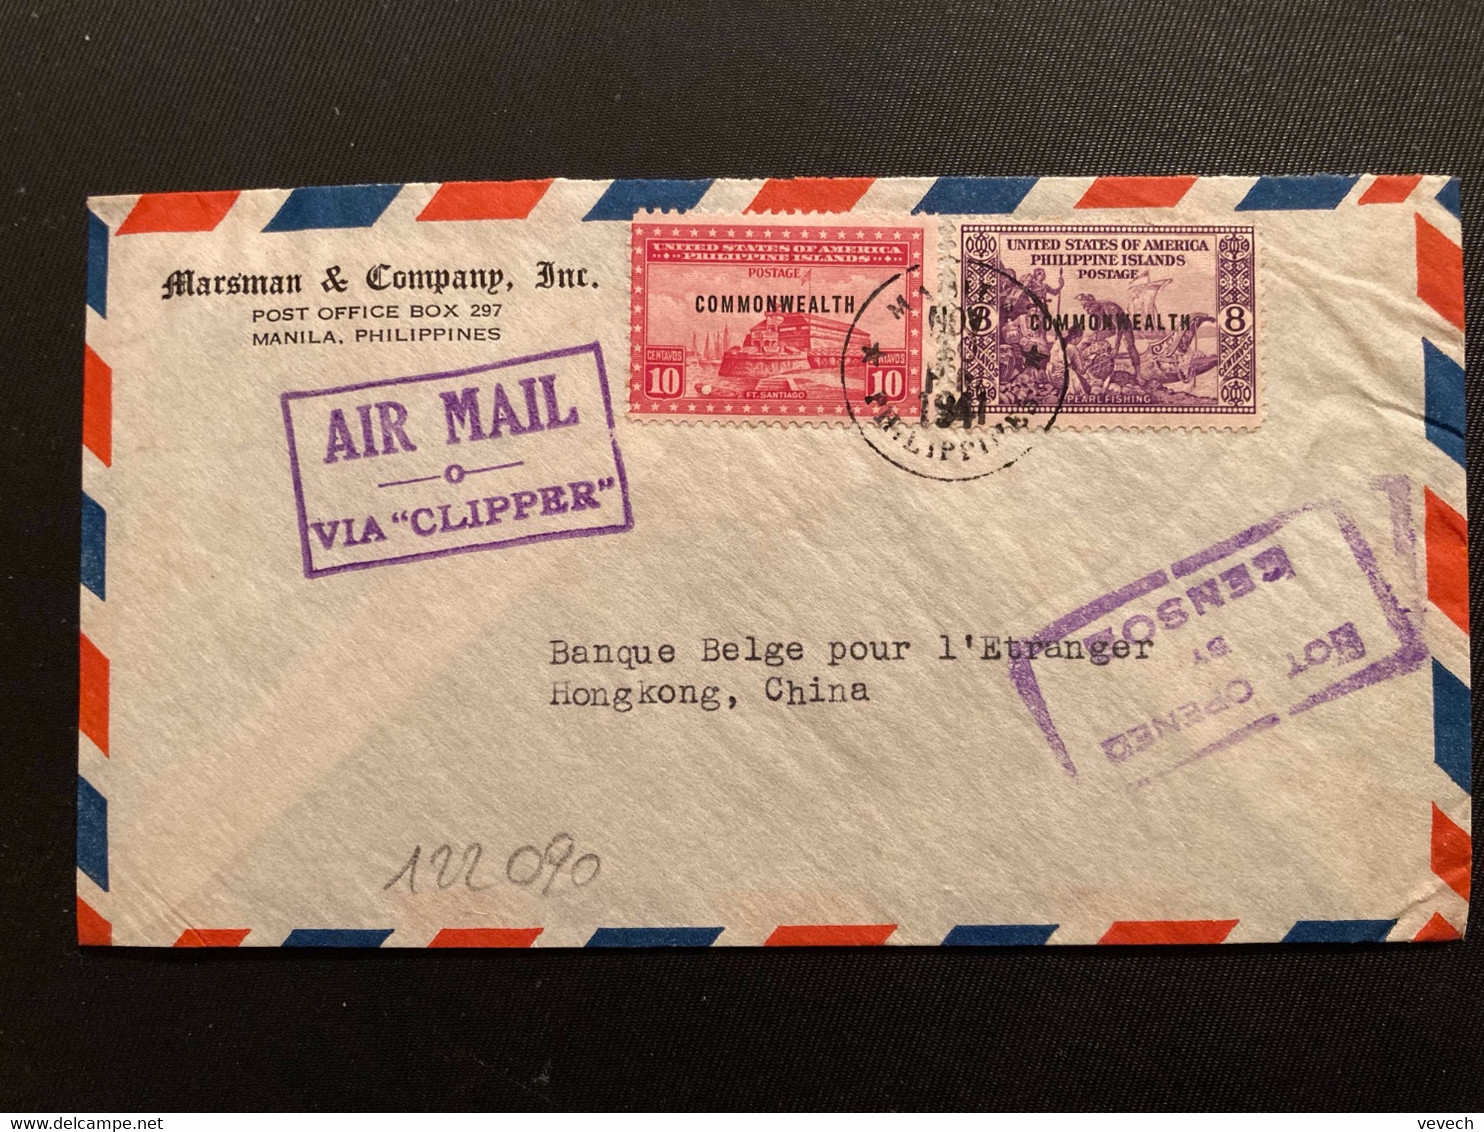 LETTRE Par Avion VIA "CLIPPER" Pour HONG KONG CHINE TP 10c + 8c Surchargé. COMMONWEALTH OBL.NOV 10 1941 MANILA + NOT OPE - Philippinen